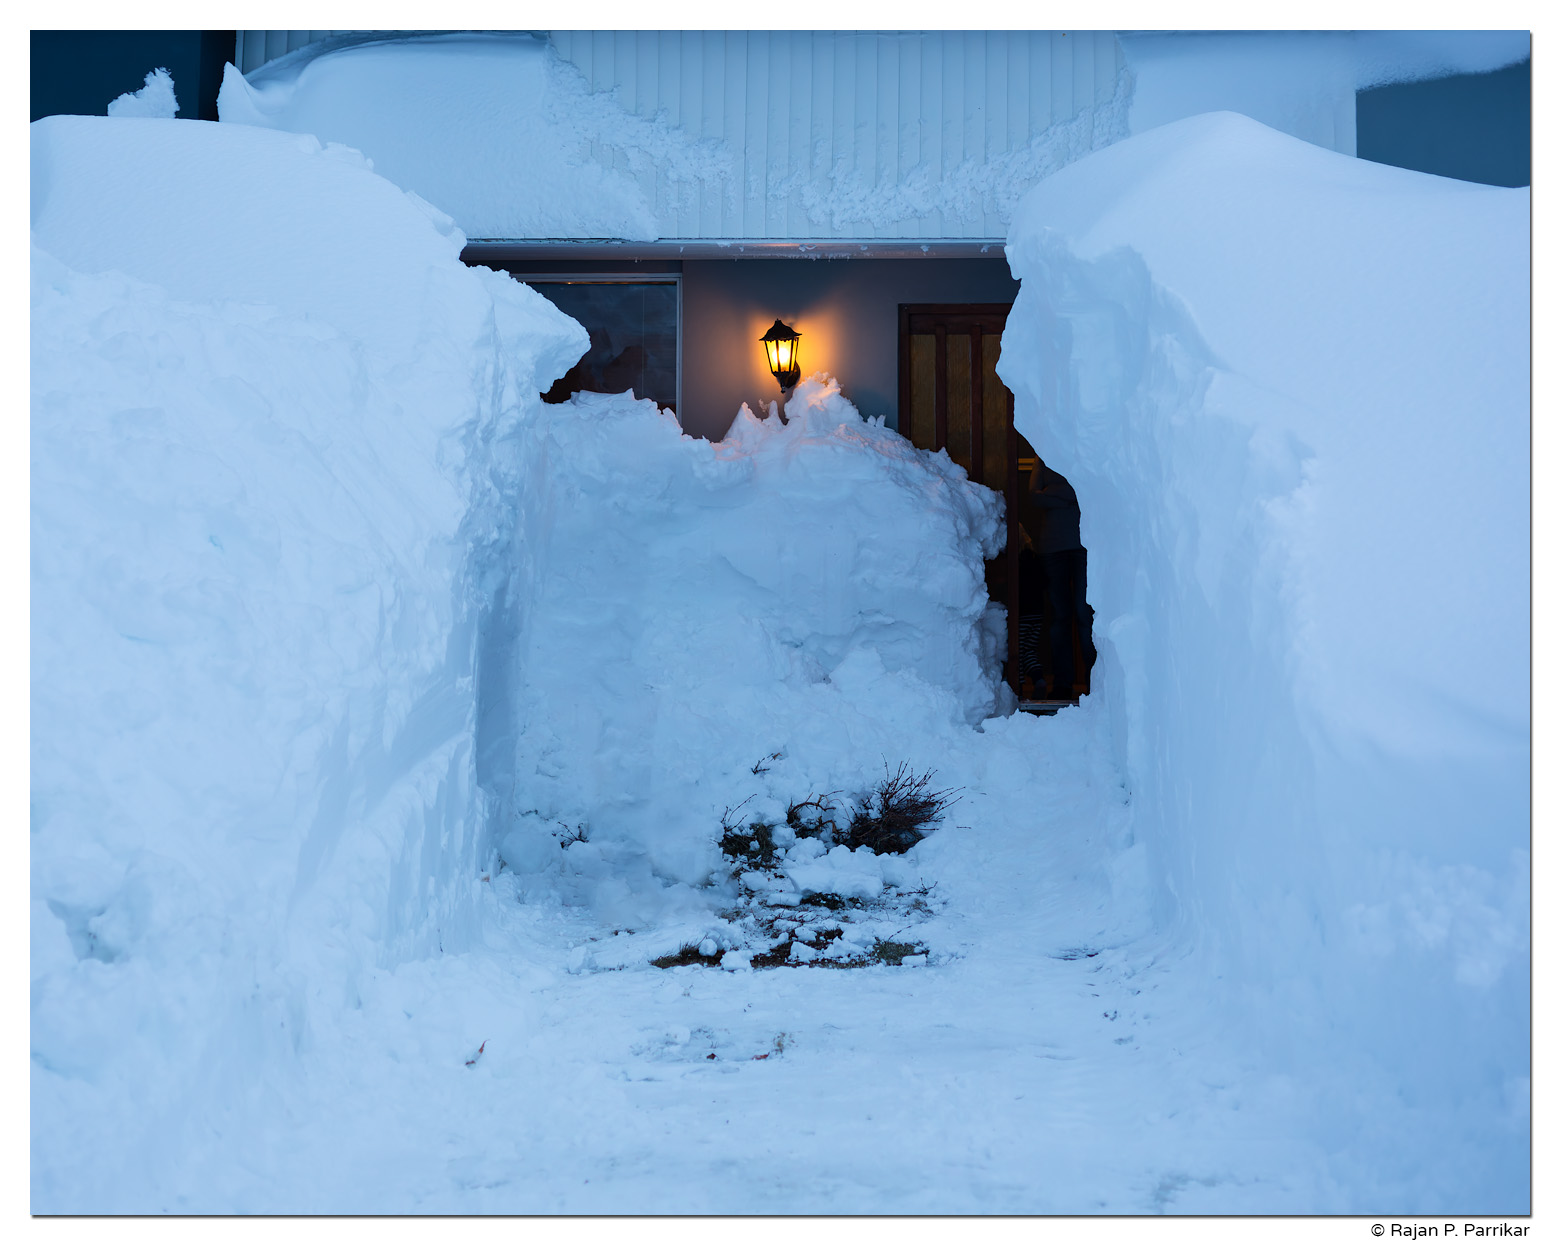 House in snow, Hofsós, Iceland